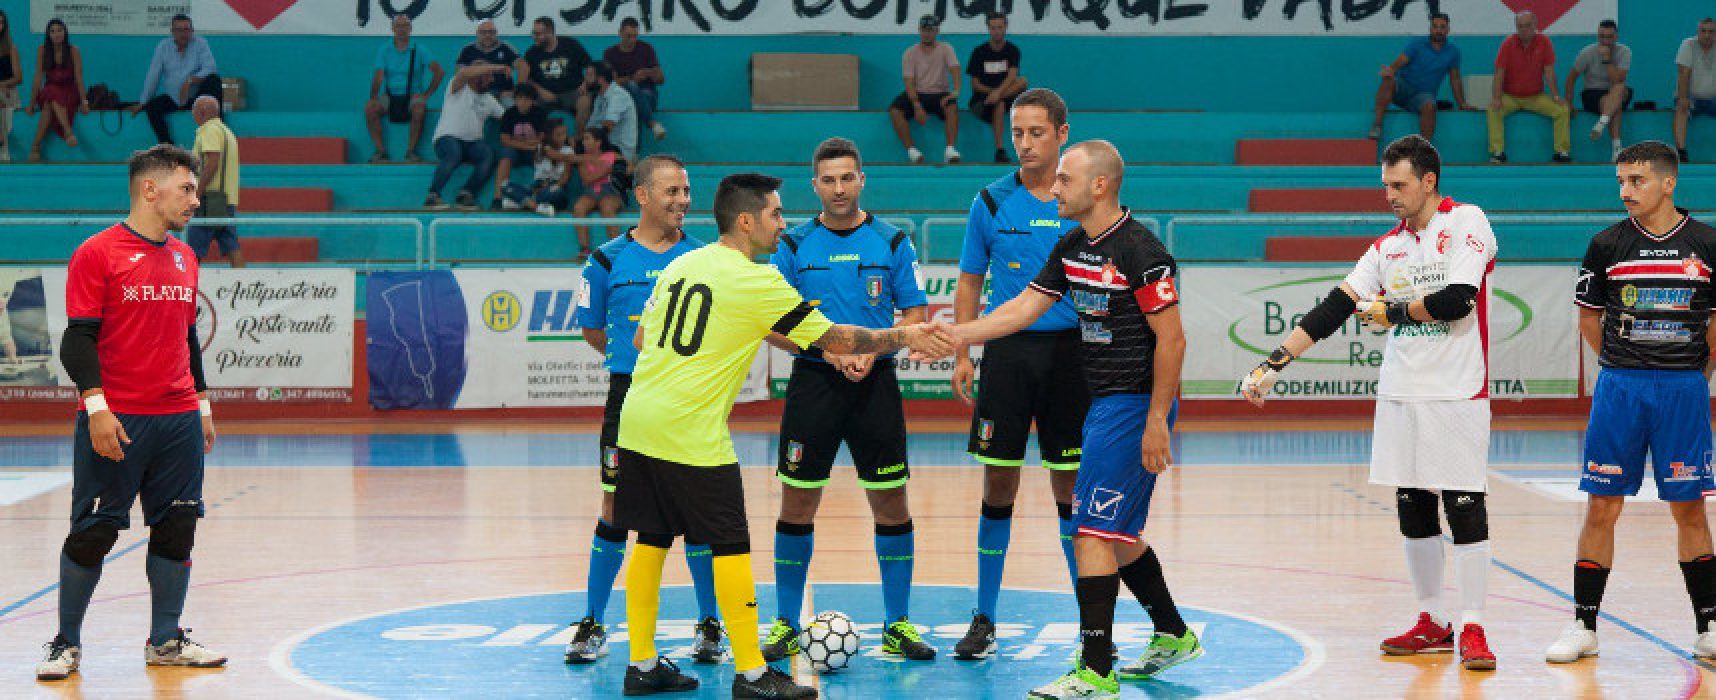 Derby della Bat per Futsal Bisceglie e Diaz, scontro salvezza per il Futbol Cinco